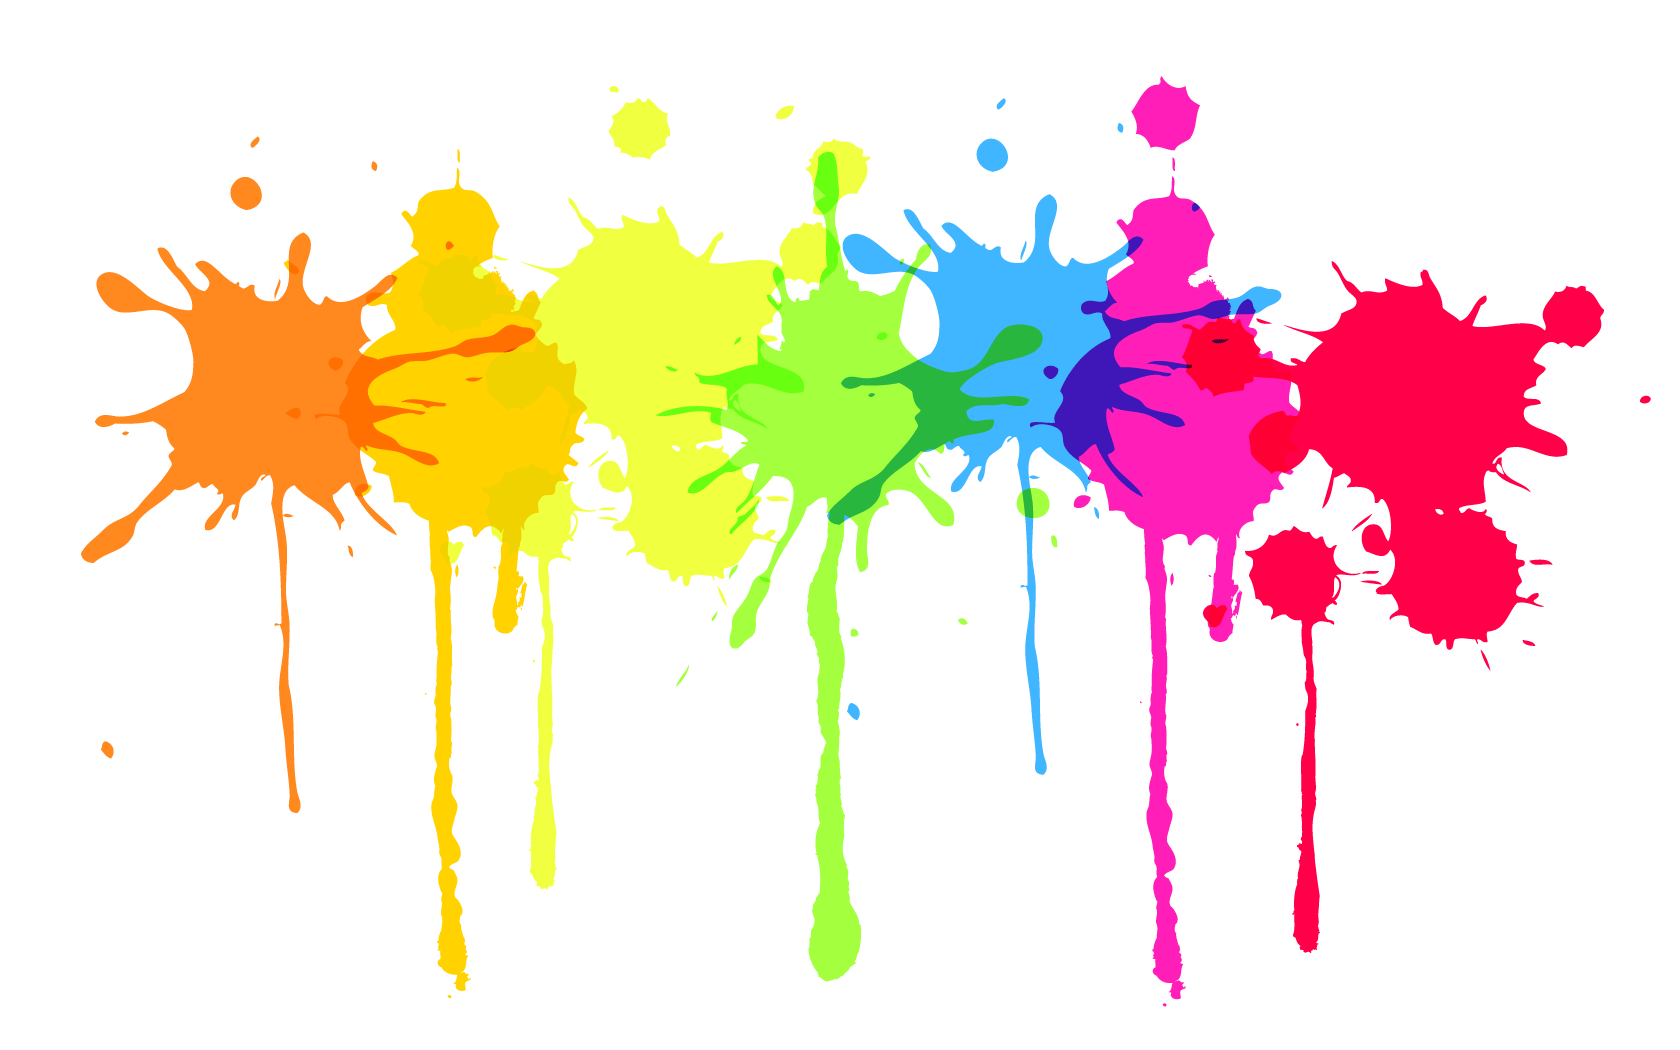 Hãy đắm mình trong thế giới màu sắc rực rỡ với những đốm sơn tuyệt đẹp. Các màu sắc cân bằng, tươi sáng sẽ đem lại cho bạn sự phấn khích và cảm giác thổi bùng cảm hứng vô tận.